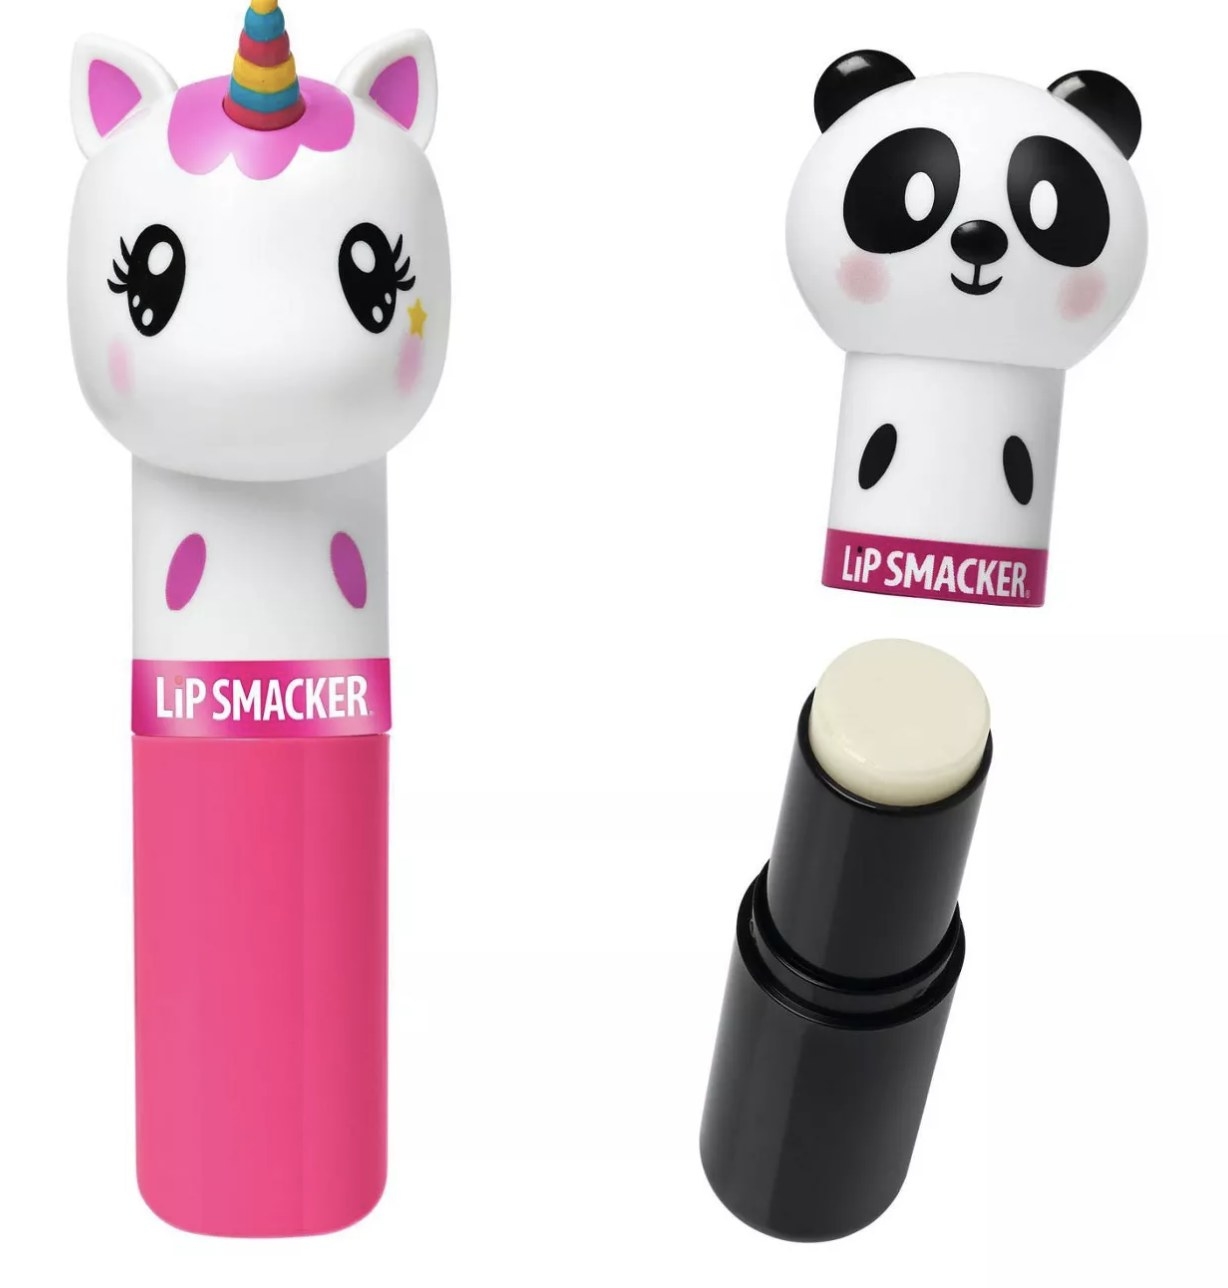 A unicorn and panda lip balm